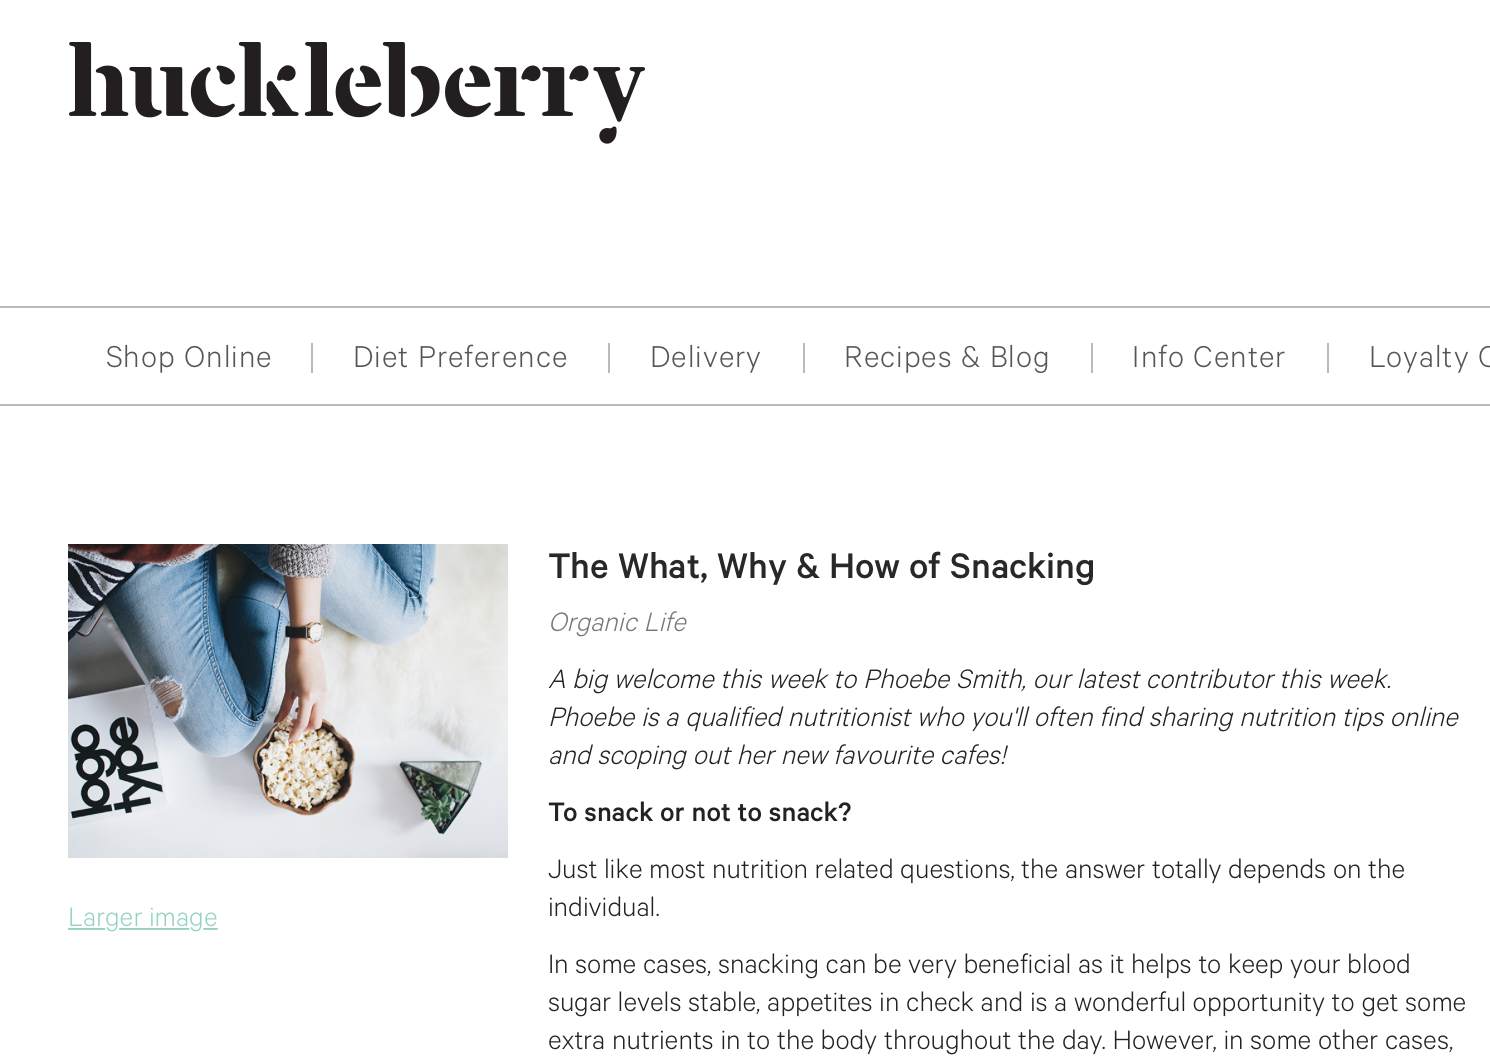 Huckleberry - Eating Seasonally with Phoebe